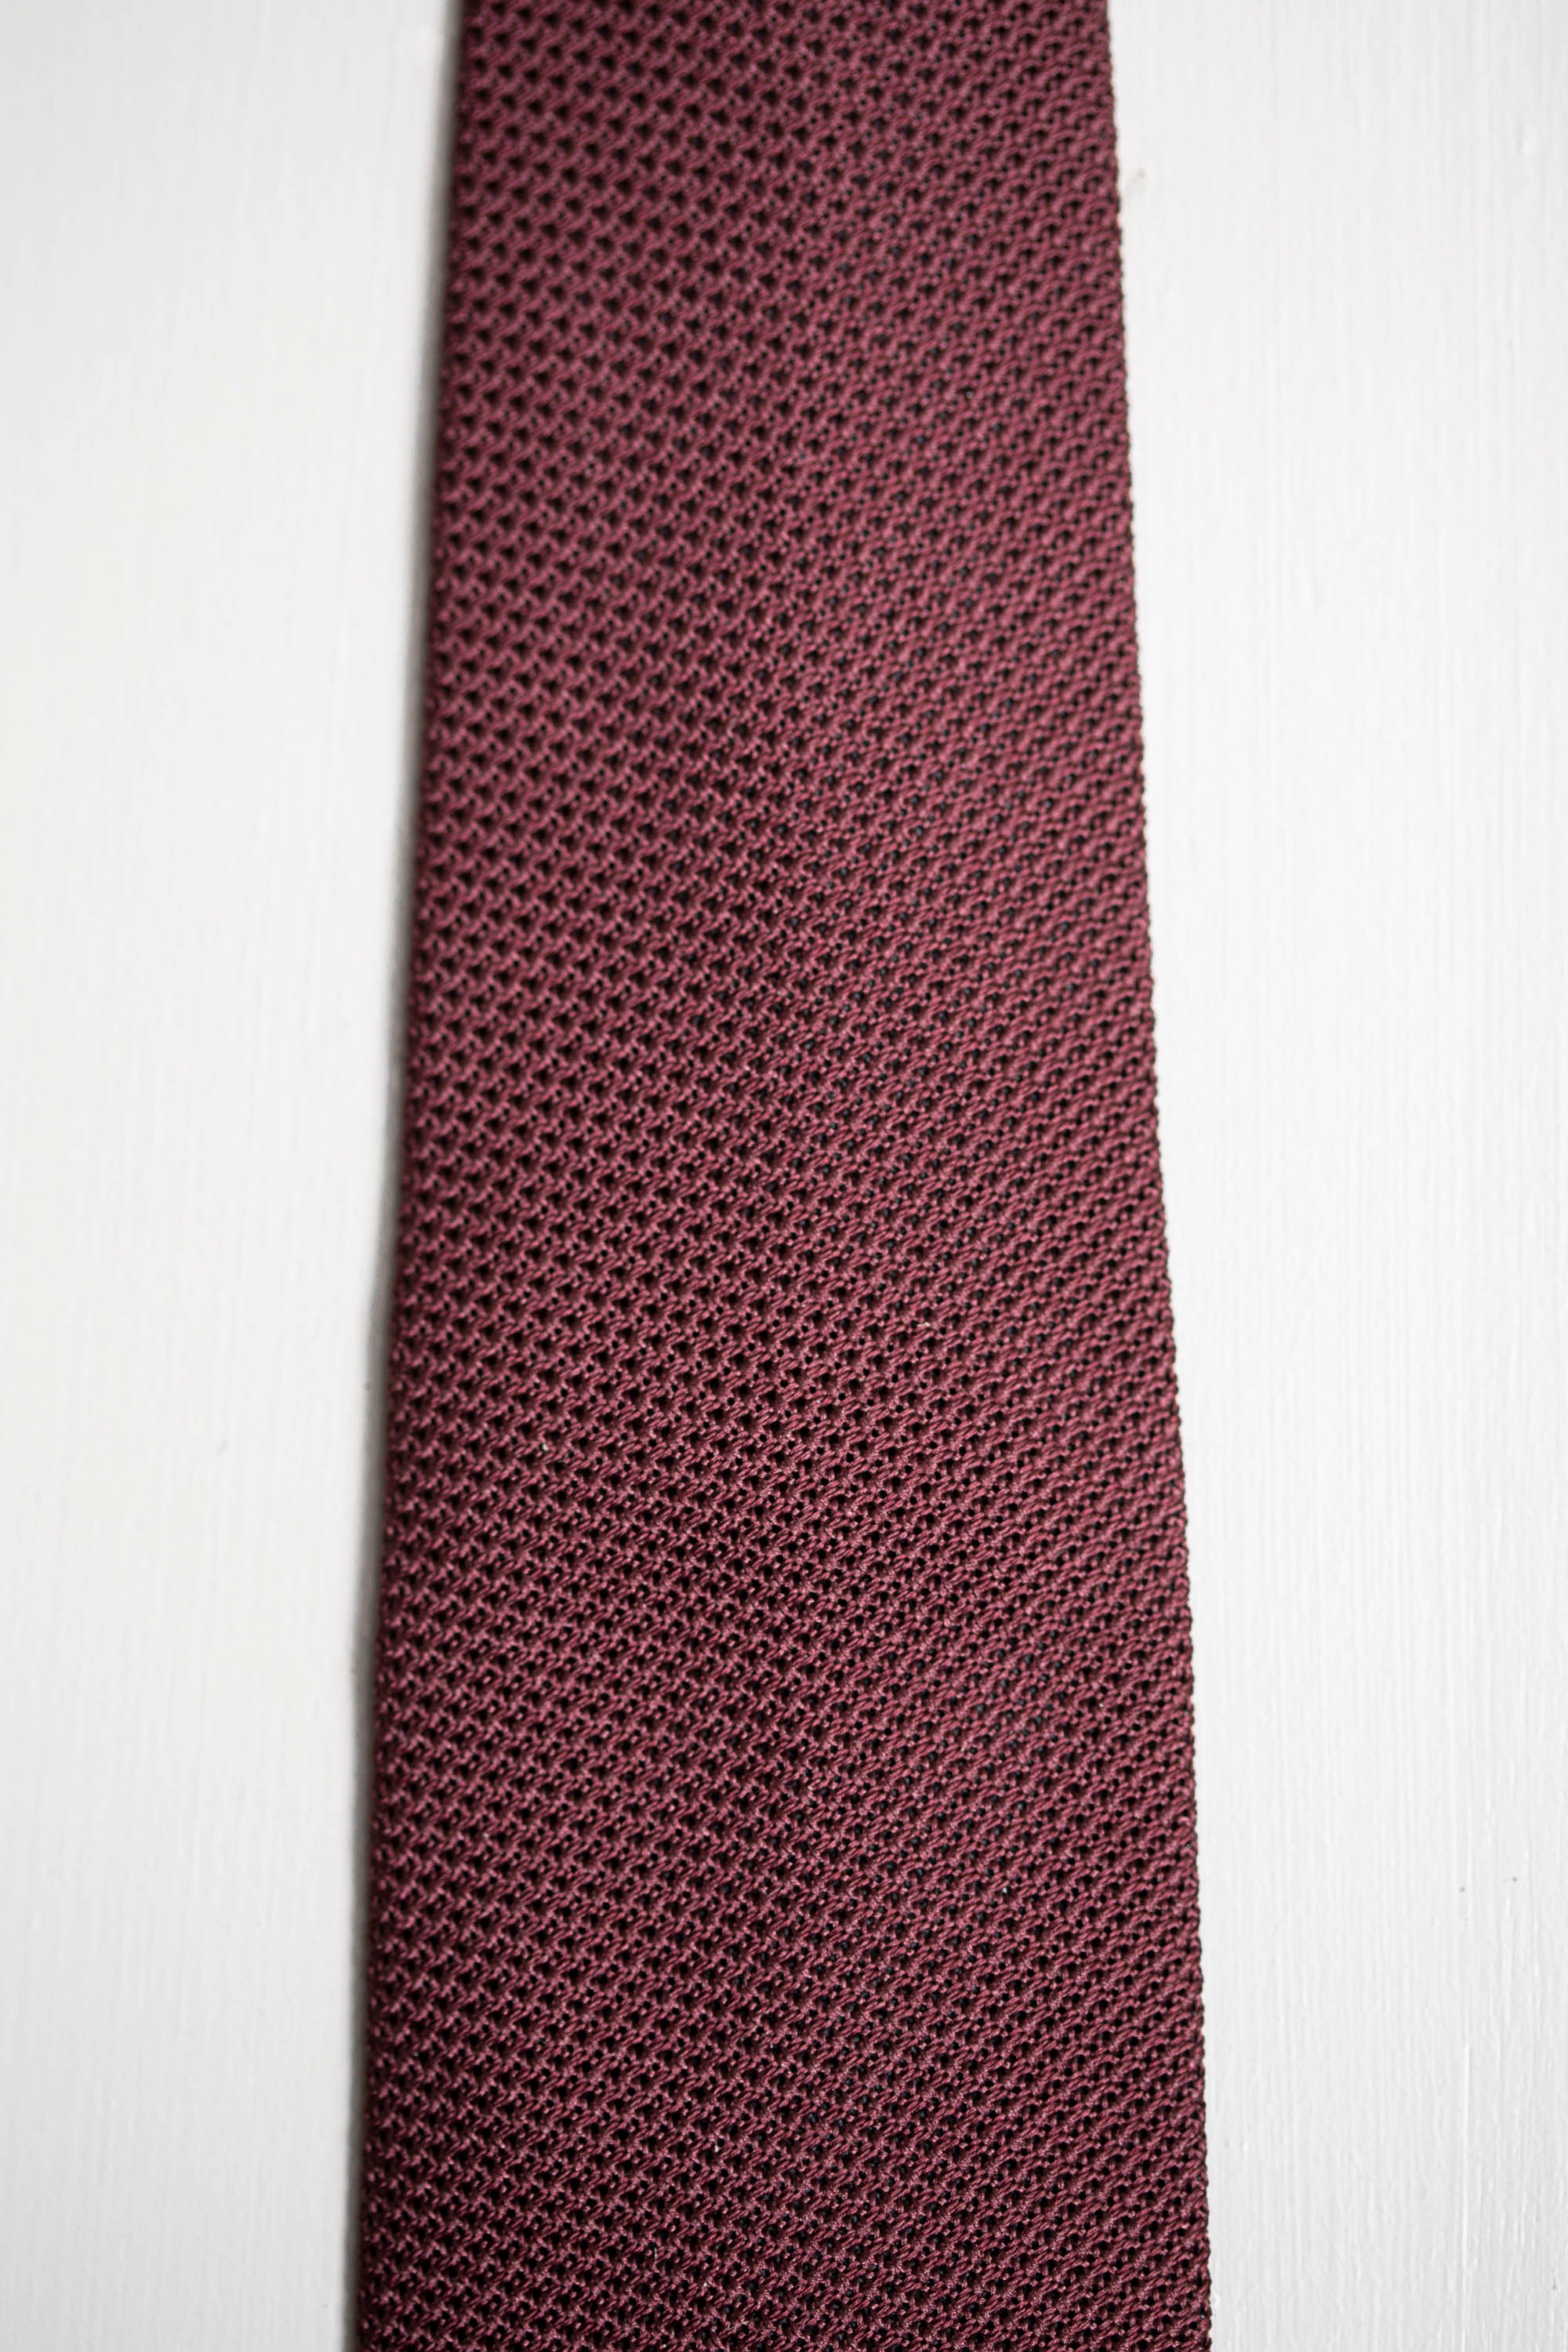 Cravatta in seta, cravatta italiana, made in italy, grenadine cravatta, Cravate en soie, soie bordeaux, cravate italienne, made in italy, cravate grenadine, Silk tie, burgundy silk, italian tie, made in italy, grenadine tie